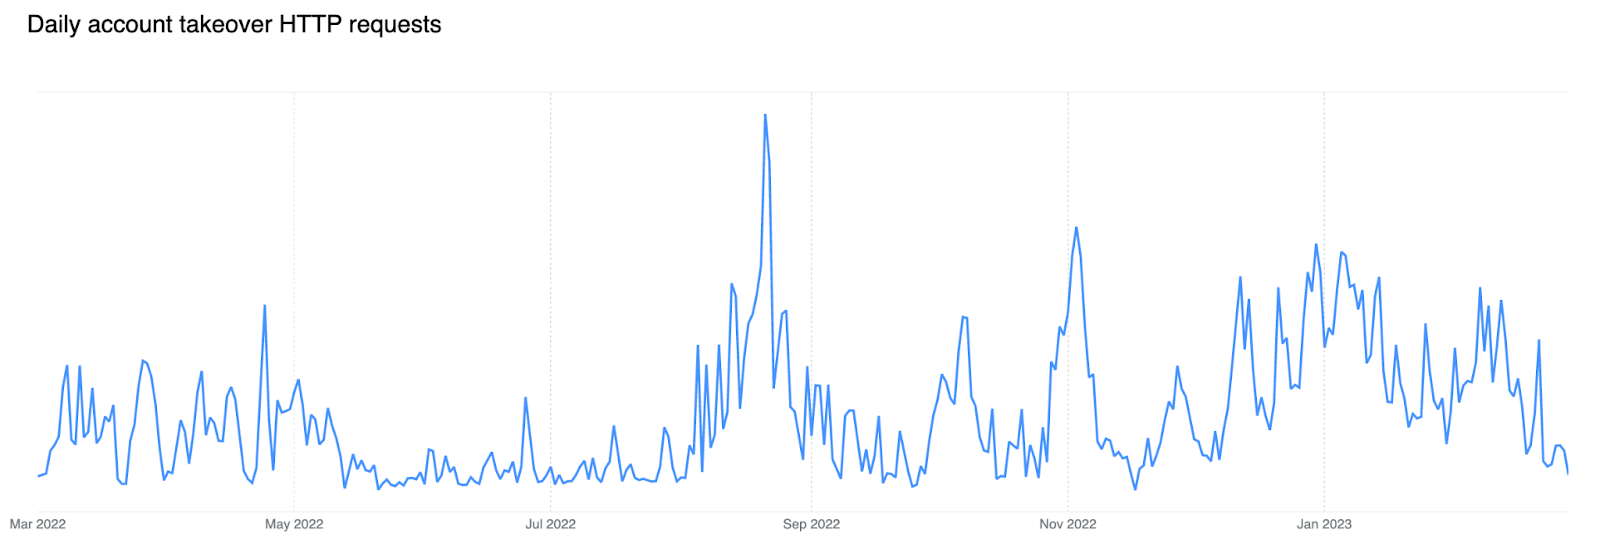 Volume quotidien de requêtes HTTP avec usurpation de compte au cours des 12 derniers mois